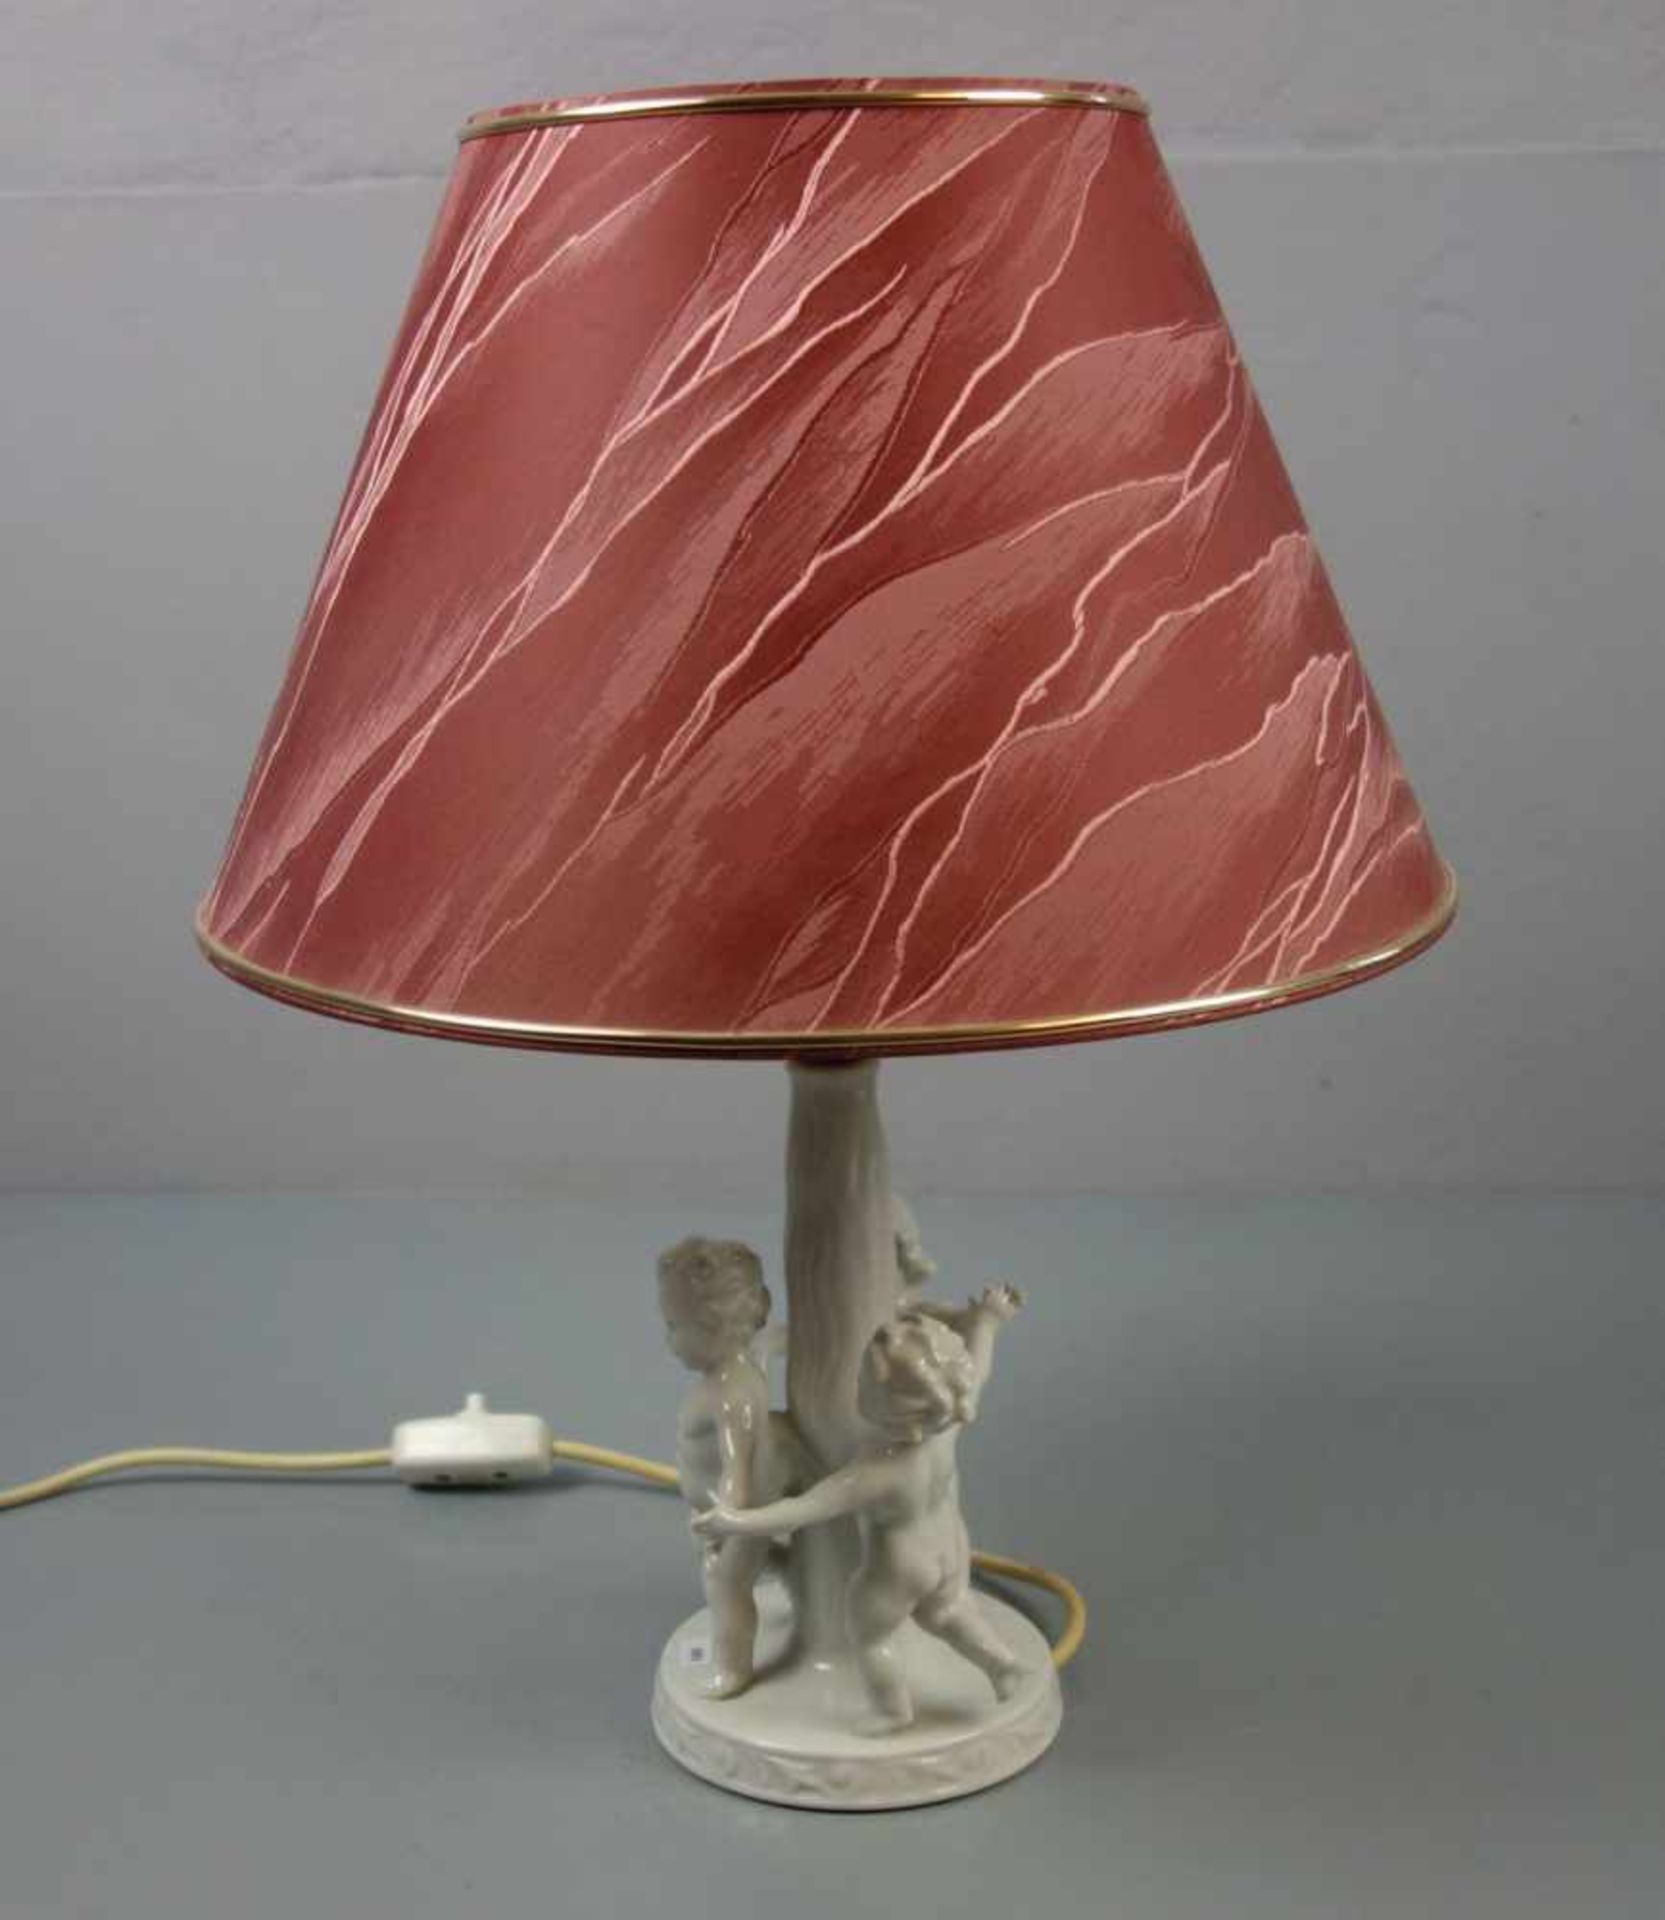 FIGÜRLICHE LAMPE / TISCHLAMPE "DER REIGEN" / table lamp, Weissporzellan (ungemarkt), einflammig - Image 4 of 4